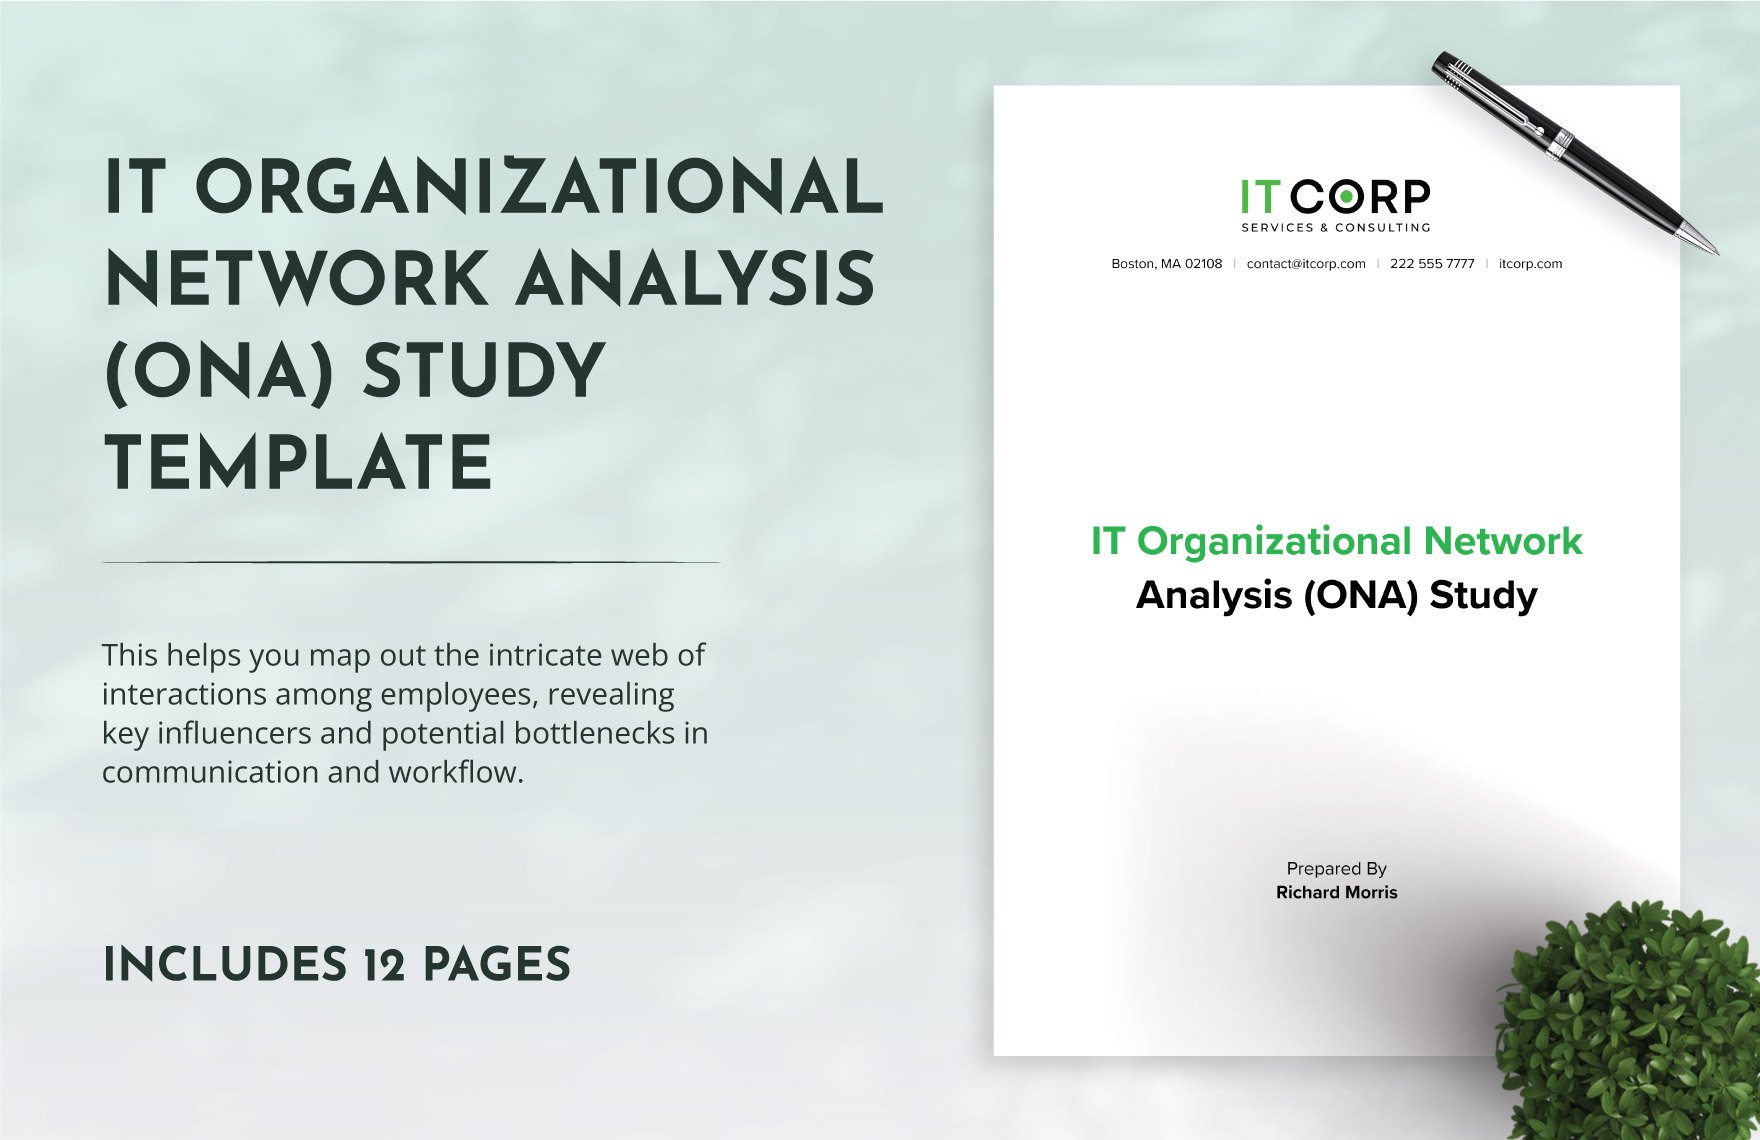 IT Organizational Network Analysis (ONA) Study Template